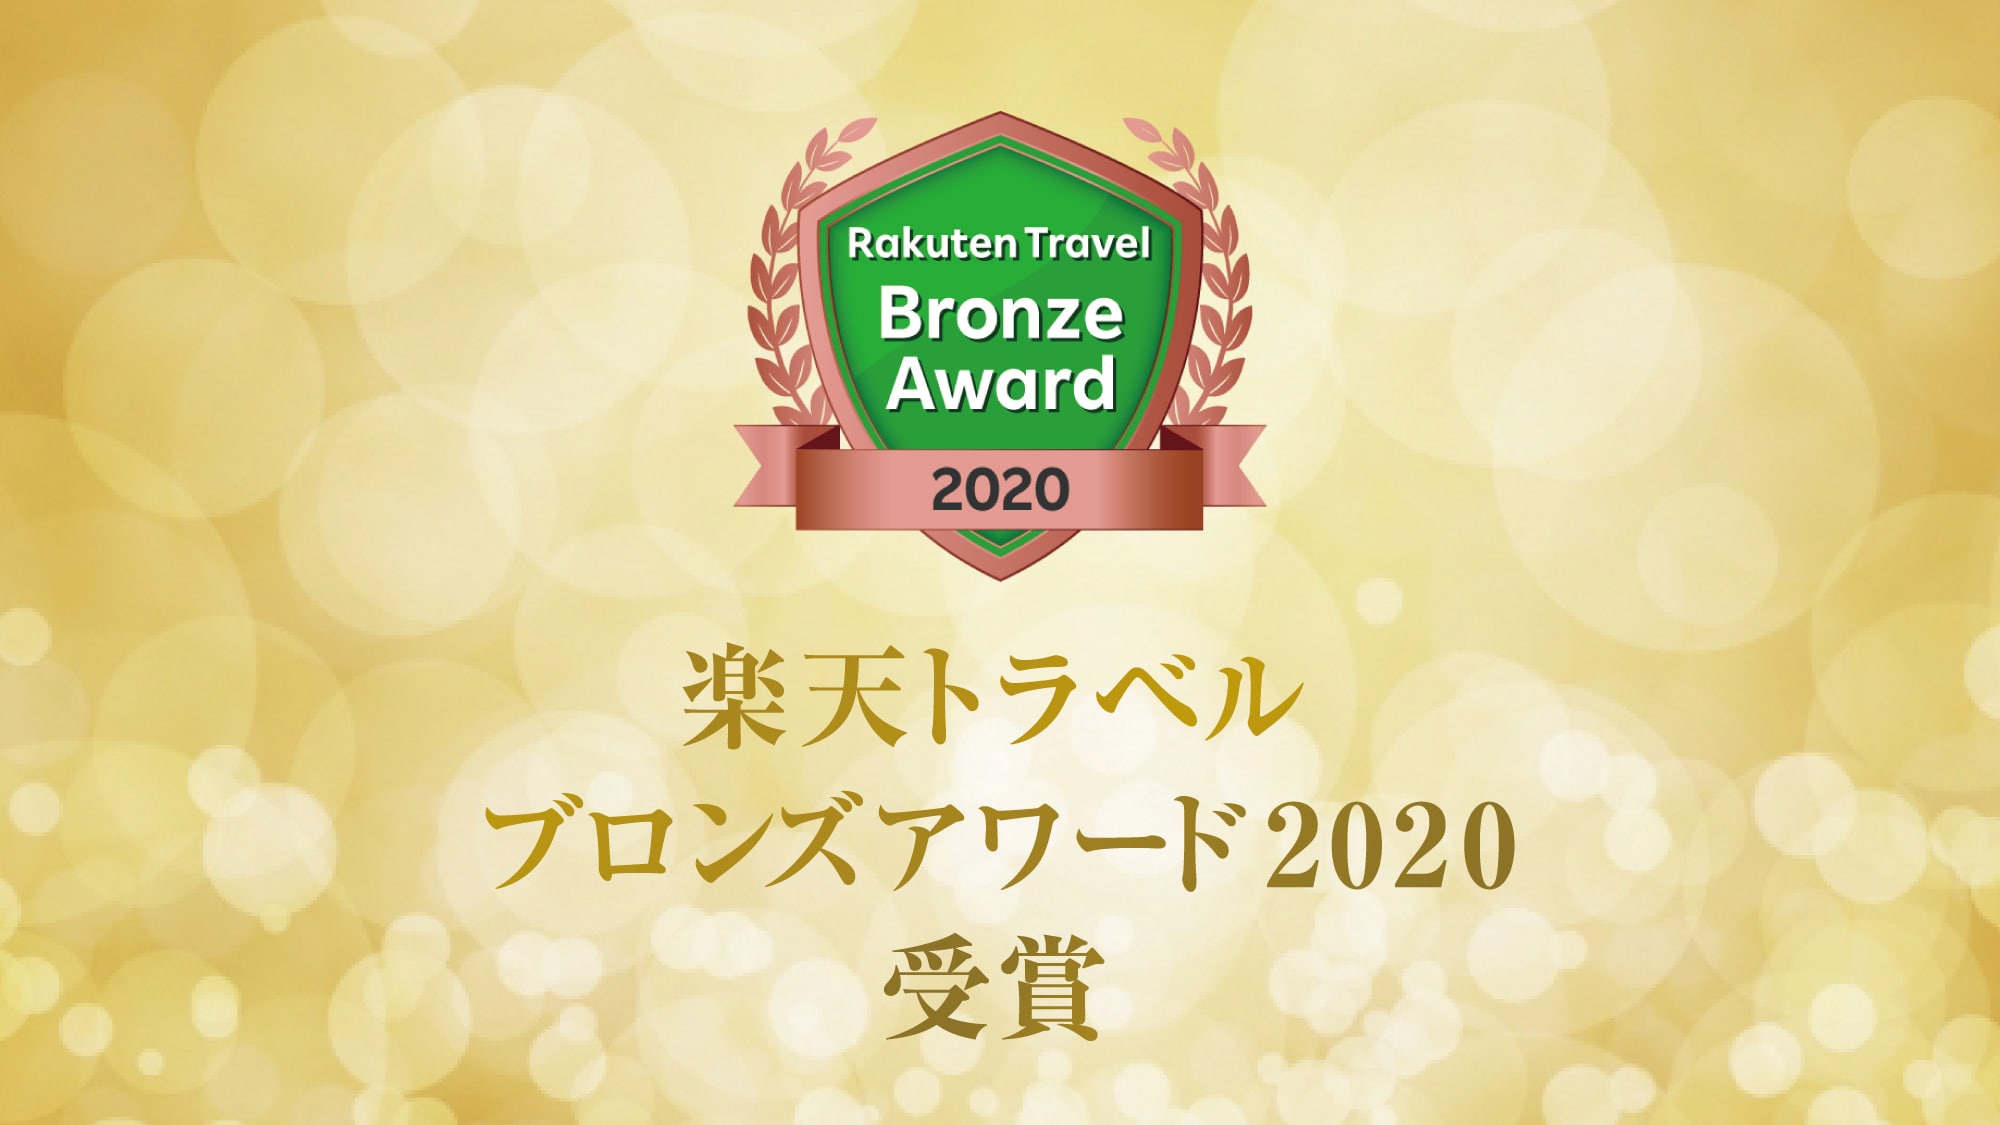 Rakuten Award 2020 เหรียญทองแดง